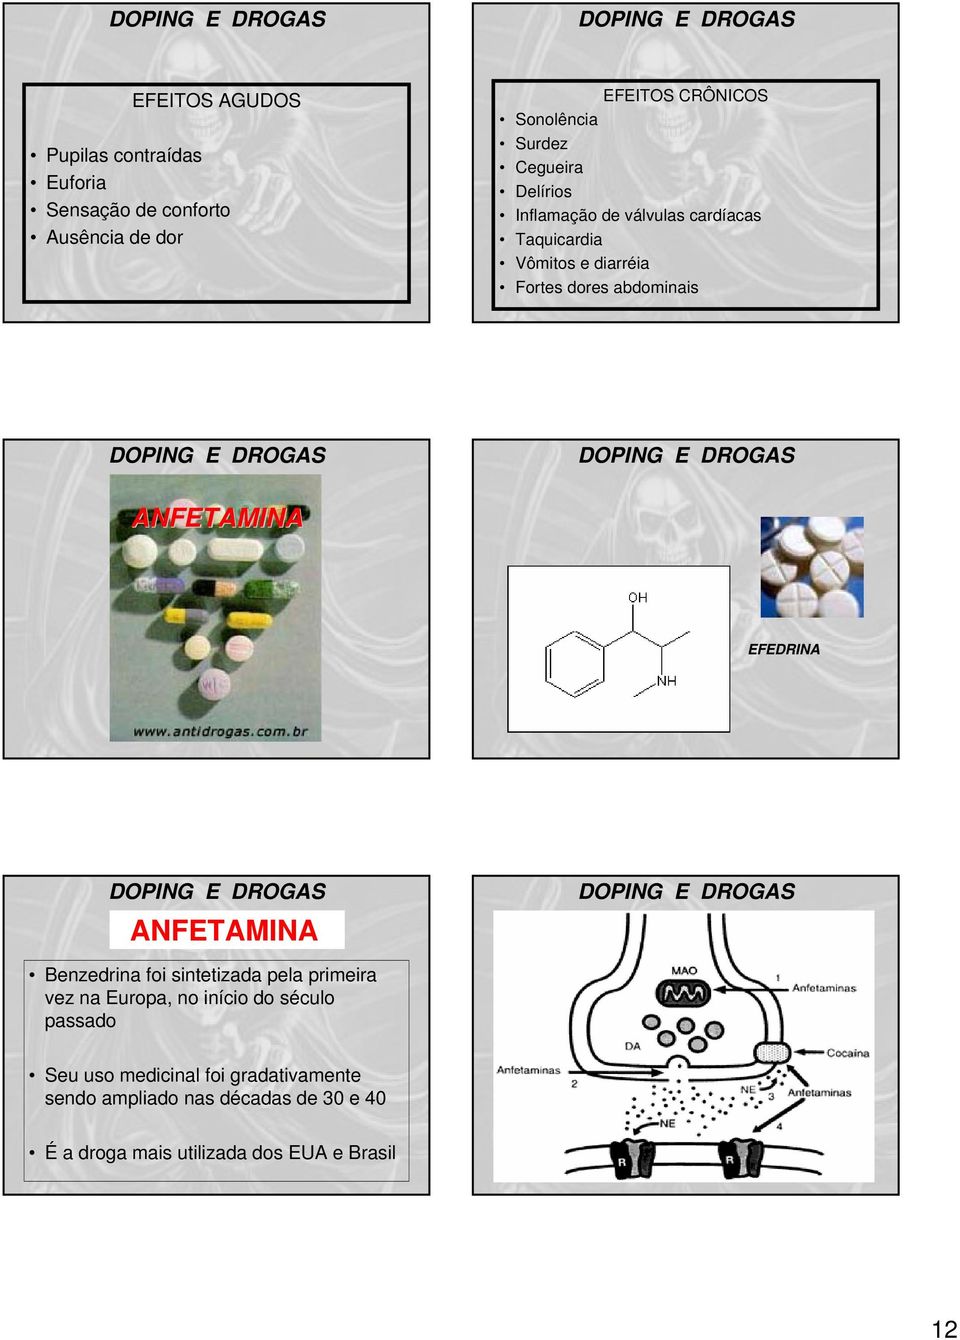 ANFETAMINA EFEDRINA ANFETAMINA Benzedrina foi sintetizada pela primeira vez na Europa, no início do século